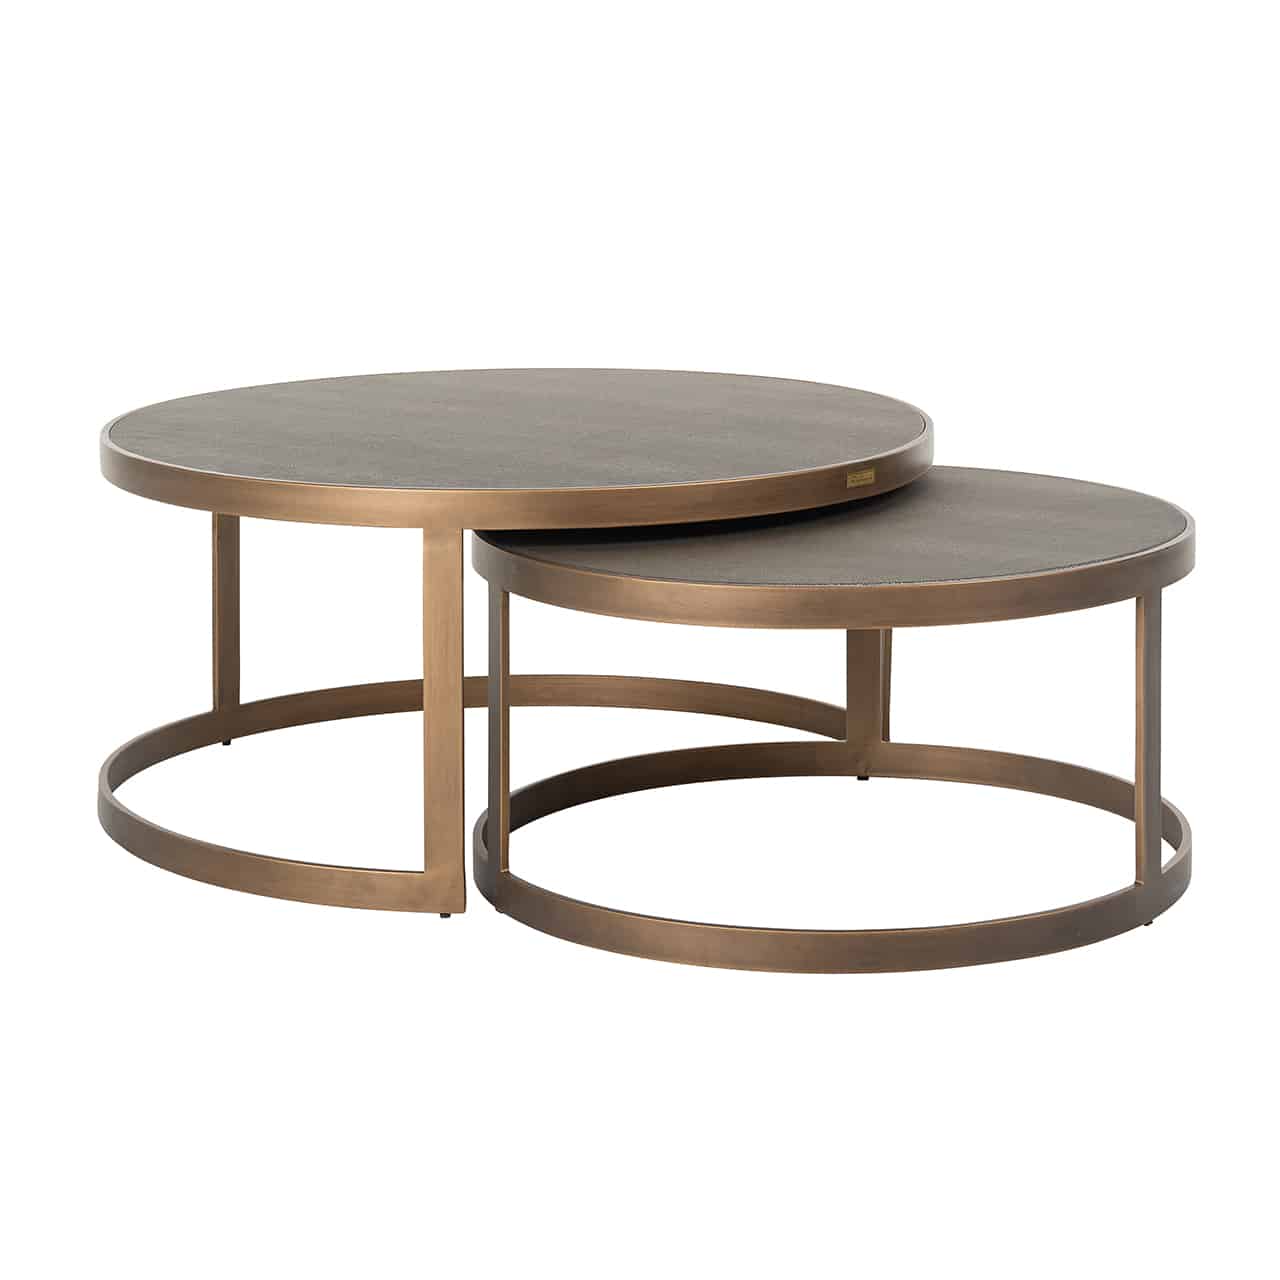 Couchtisch 2er Set; zwei verschieden hohe runde Tische, die zum Teil ineinandergeschoben sind; das Gestell ist jeweils aus breiten, messingfarbenen  Metallstreben gefertigt, mit einer glänzend braunen Tischplatte..